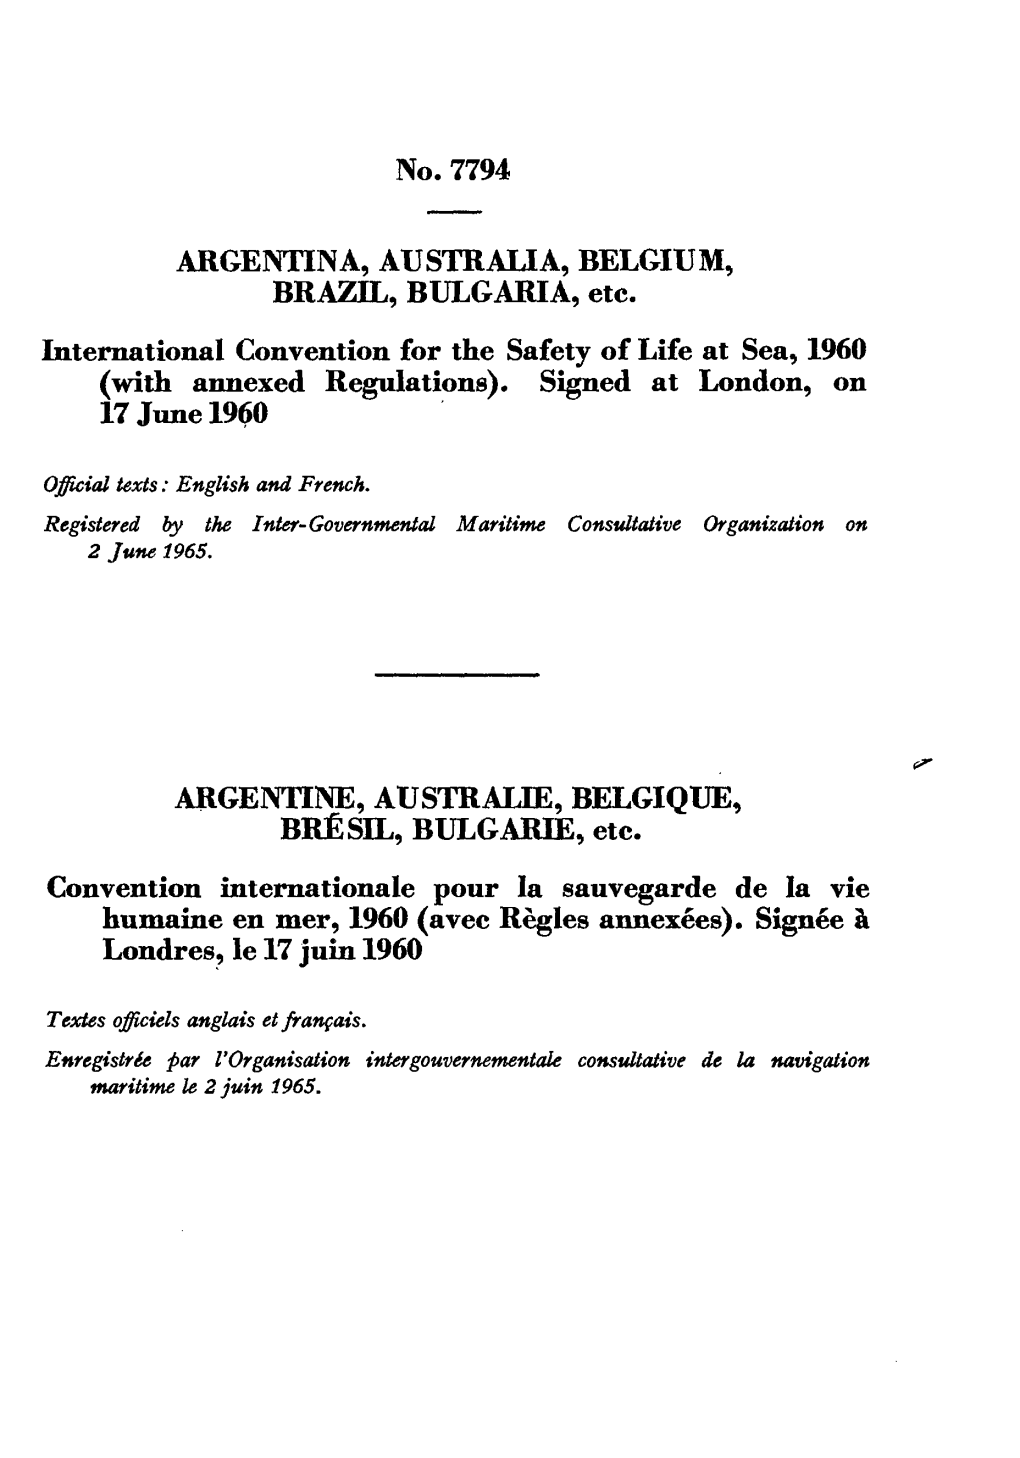 No. 7794 ARGENTINA, AUSTRALIA, BELGIUM, BRAZIL, BULGARIA, Etc